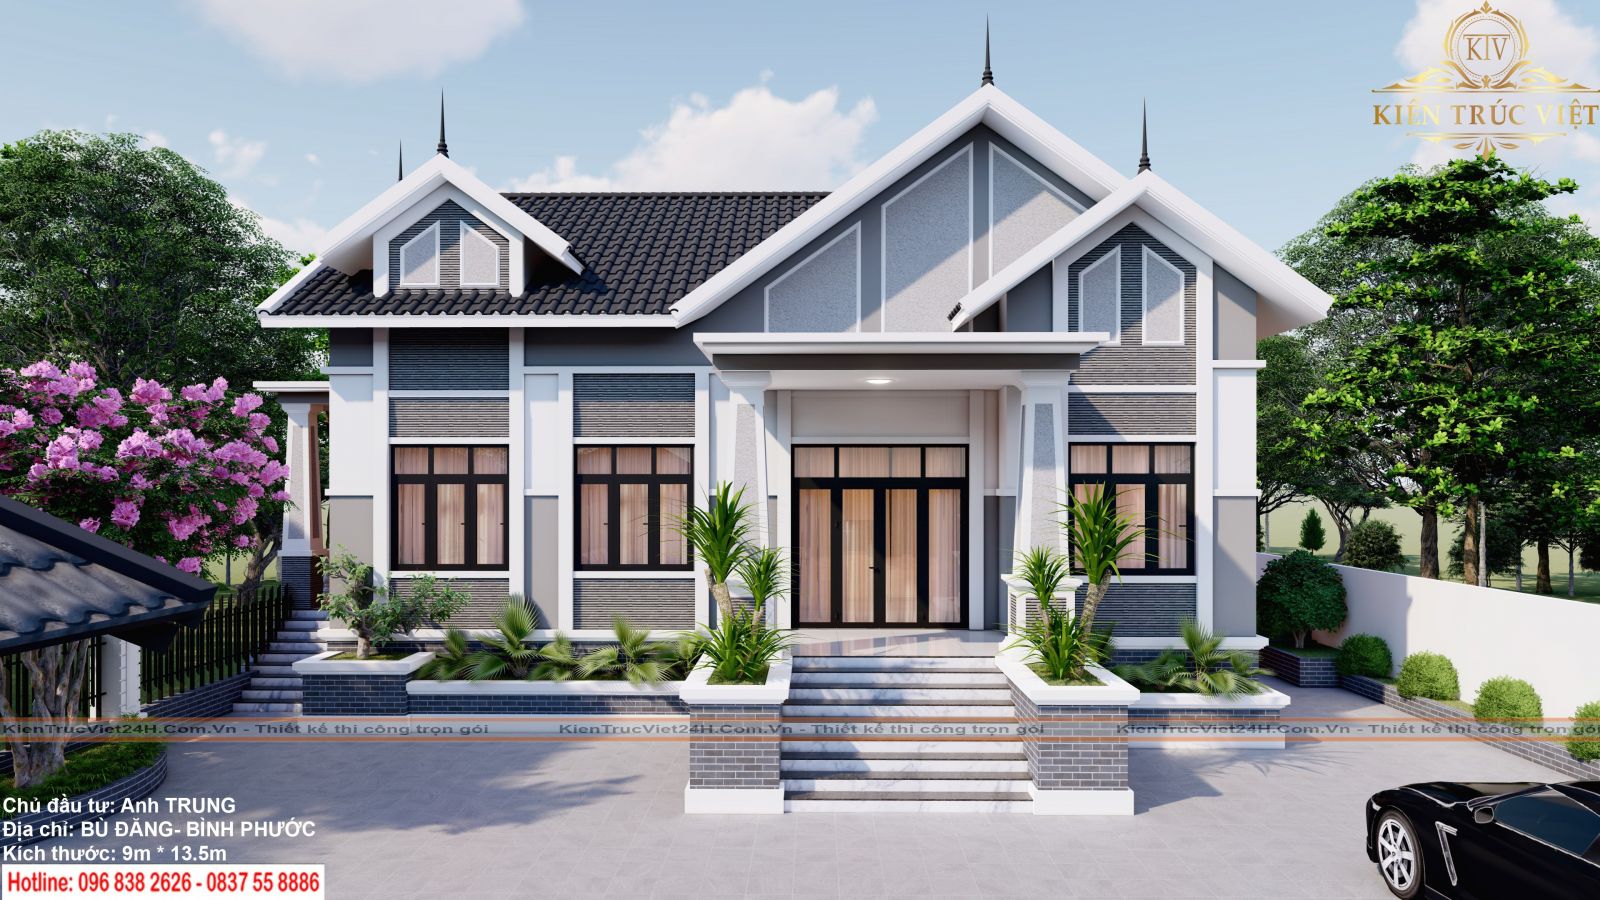 40 mẫu nhà cấp 4 mái thái đẹp nhất Việt Nam với cửa nhôm kính cao cấp